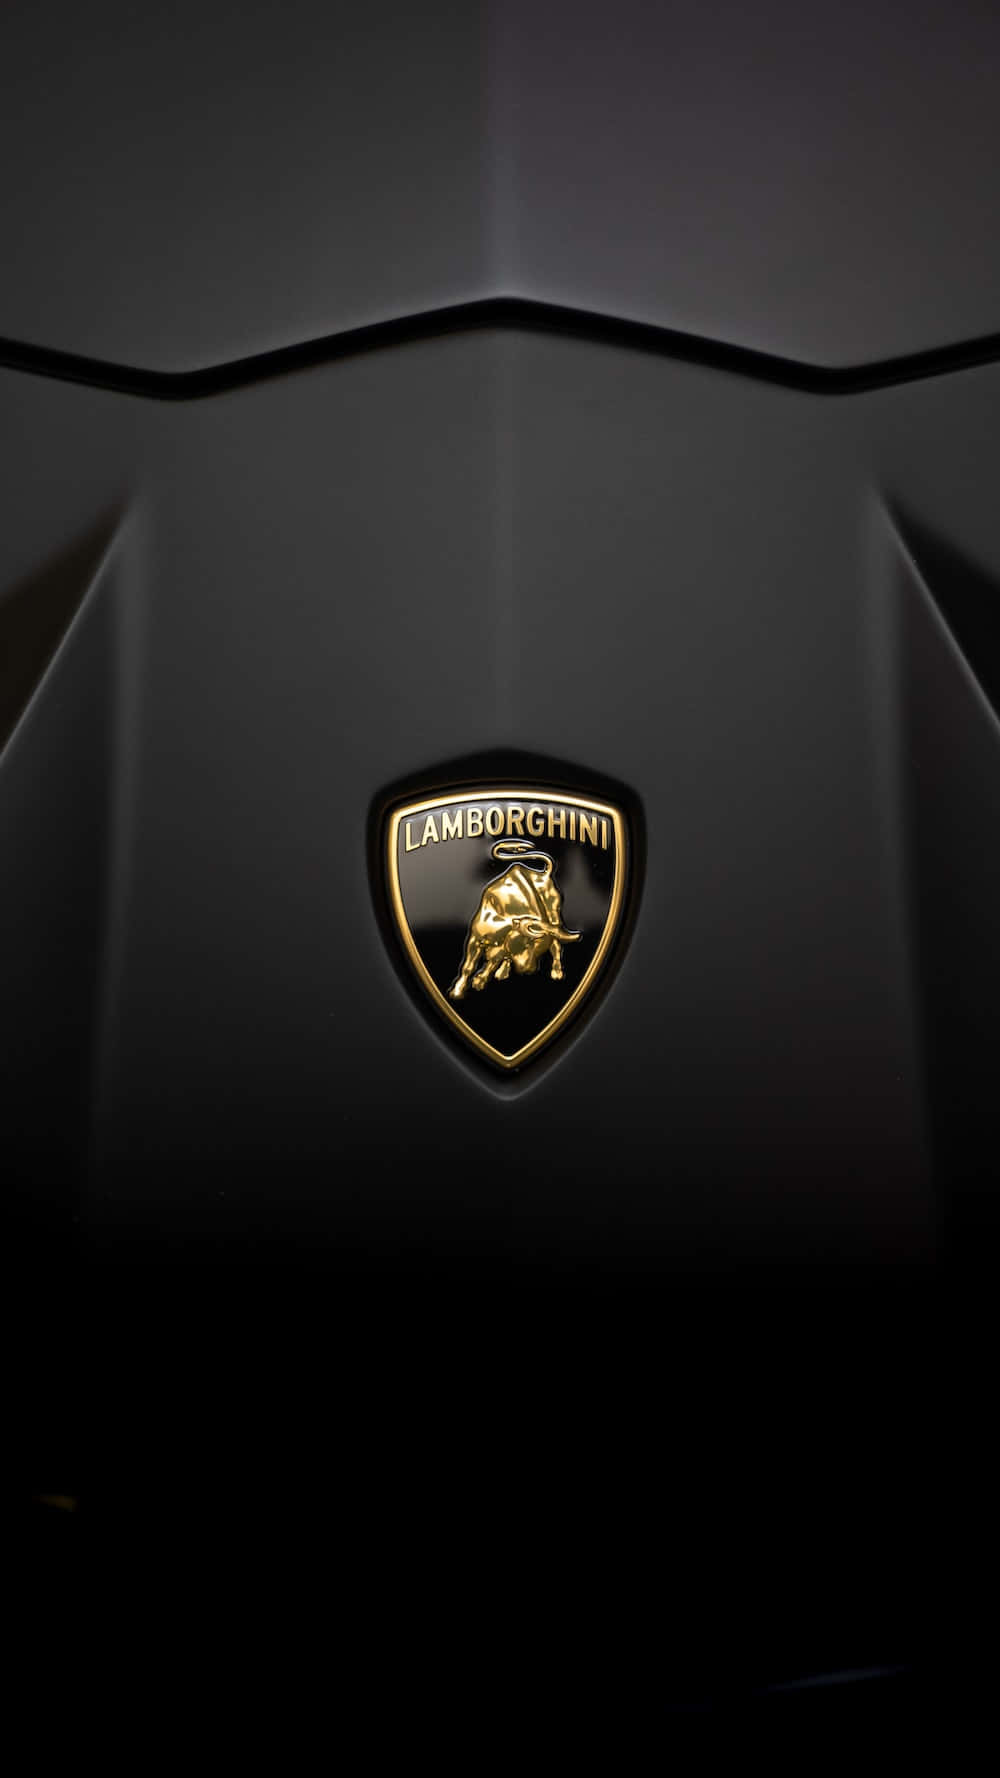 Lamborghinihuracan - Papéis De Parede.